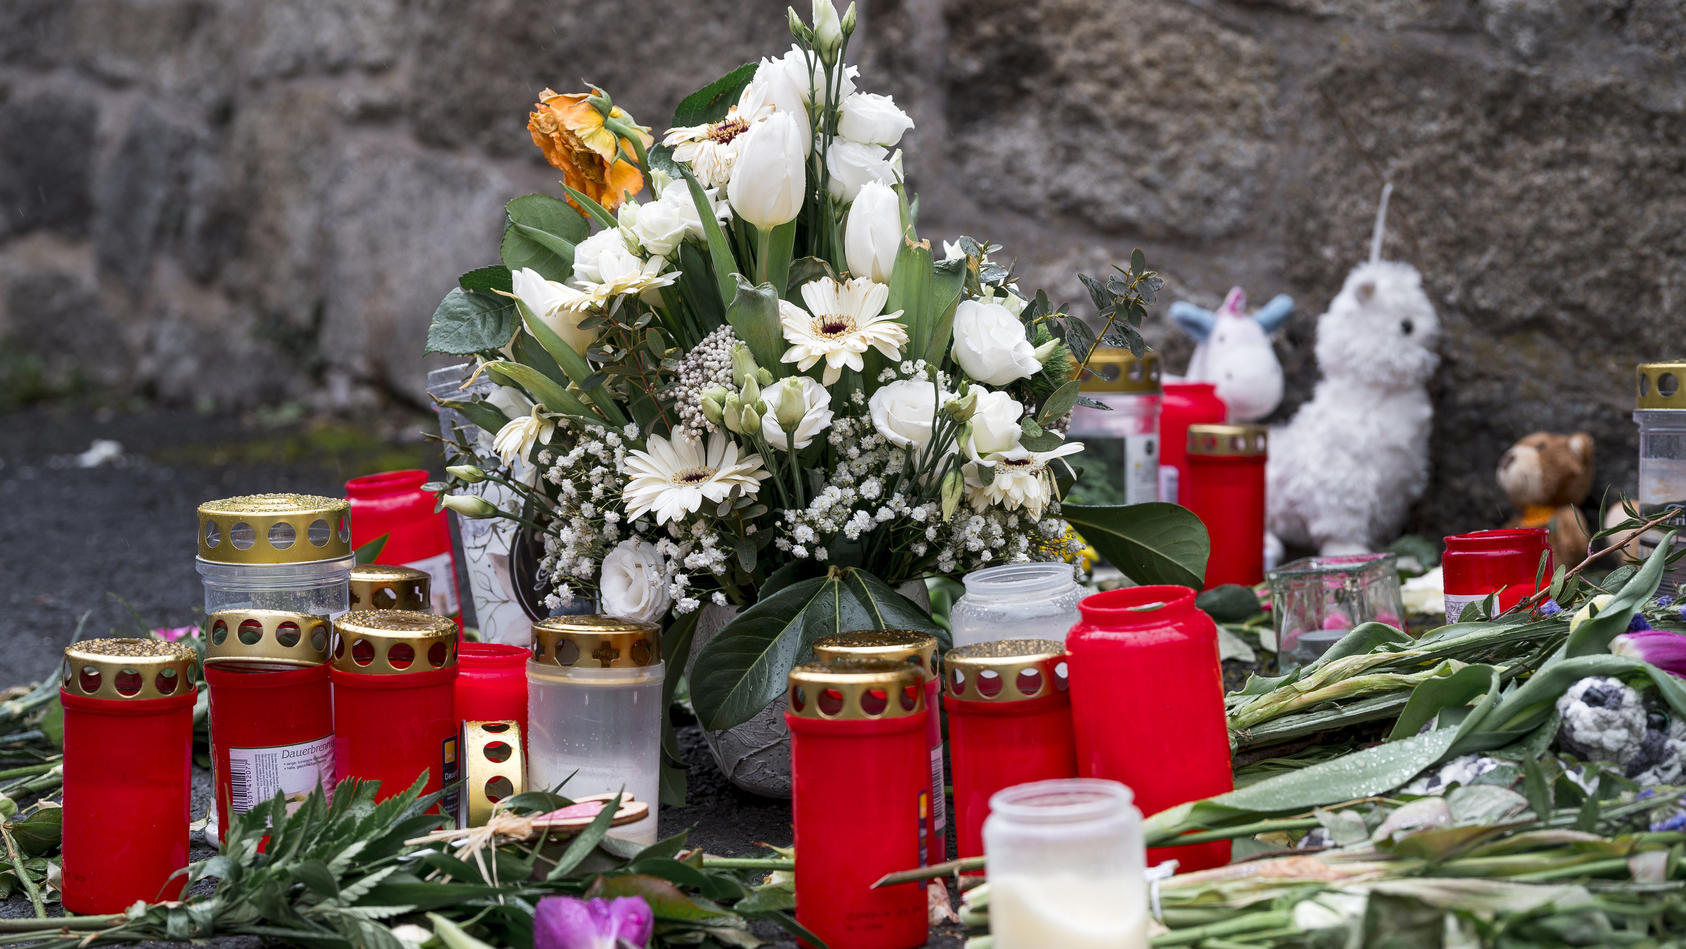 12.04.2023, Bayern, Wunsiedel: An der Straßenecke zur Zufahrtsstraße zum Kinder- und Jugendhilfezentrum, in dem eine Zehnjährige tot aufgefunden wurde, liegen Blumen, Kuscheltiere und Grablichter auf dem Gehweg. Foto: Daniel Vogl/dpa +++ dpa-Bildfunk